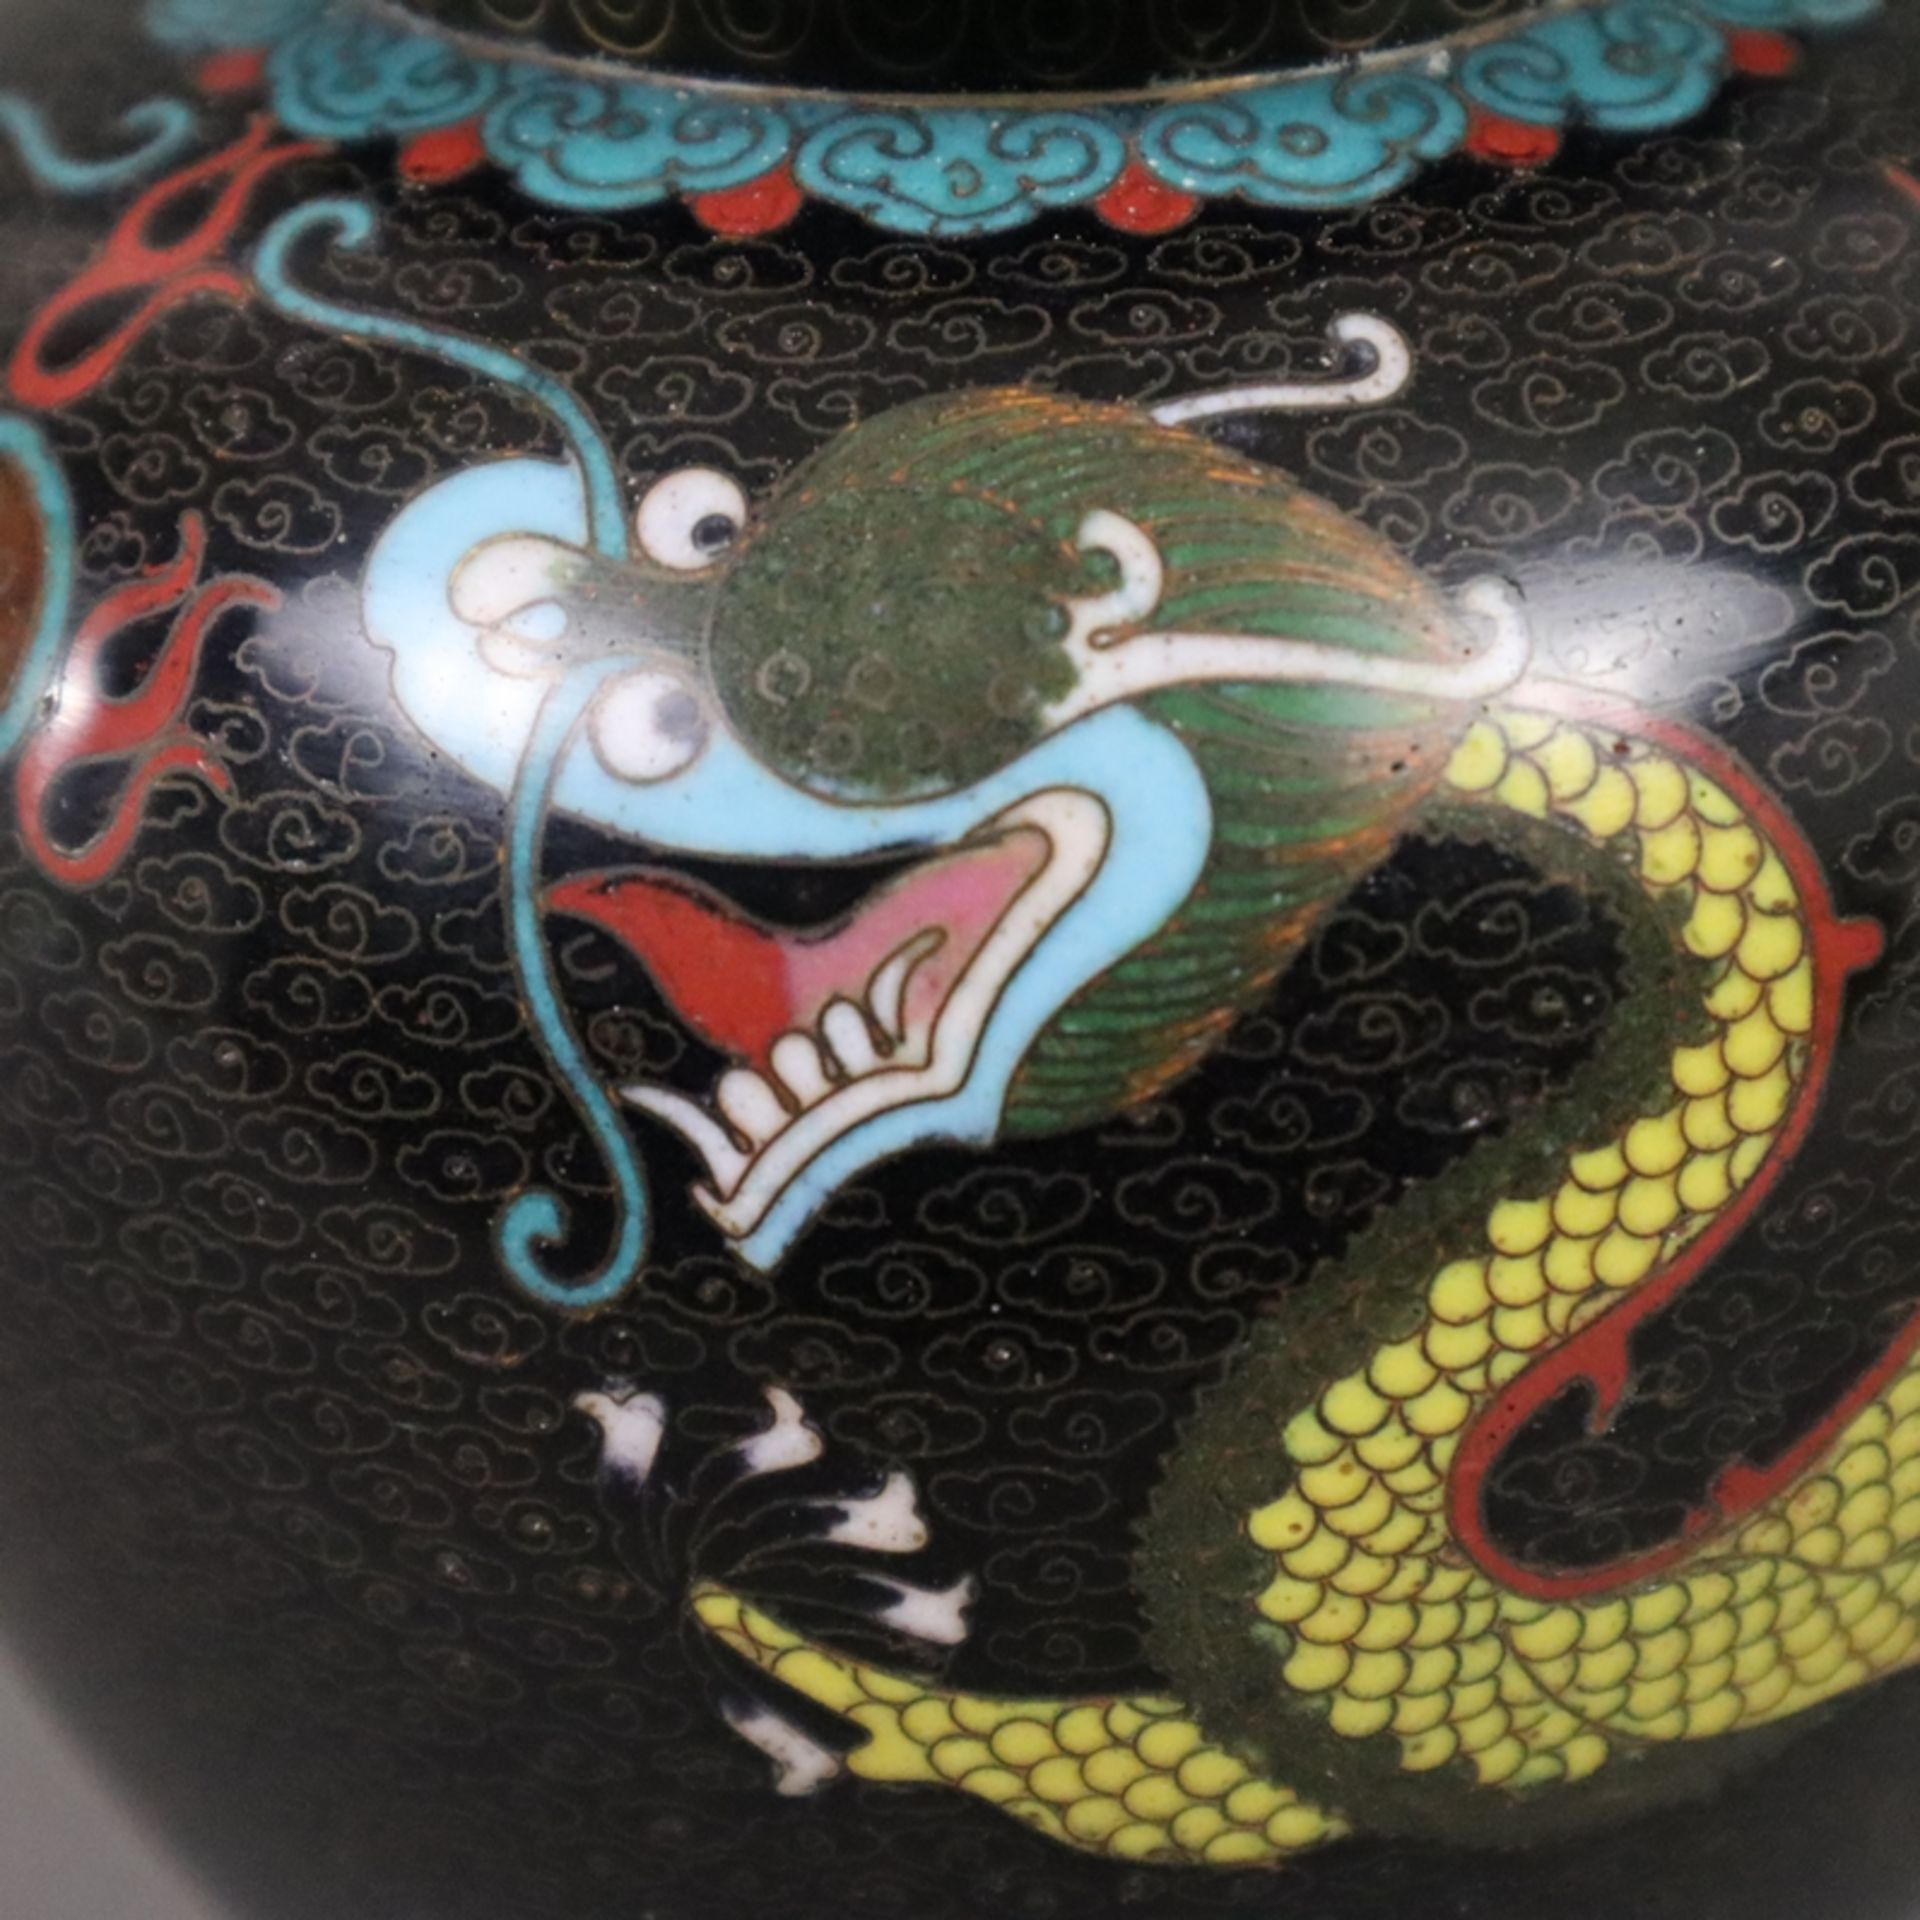 Cloisonné-Deckelvase mit Drachendekor - China, 20. Jh., Bronzelegierung, polychromes Email-Cloisonn - Bild 2 aus 7